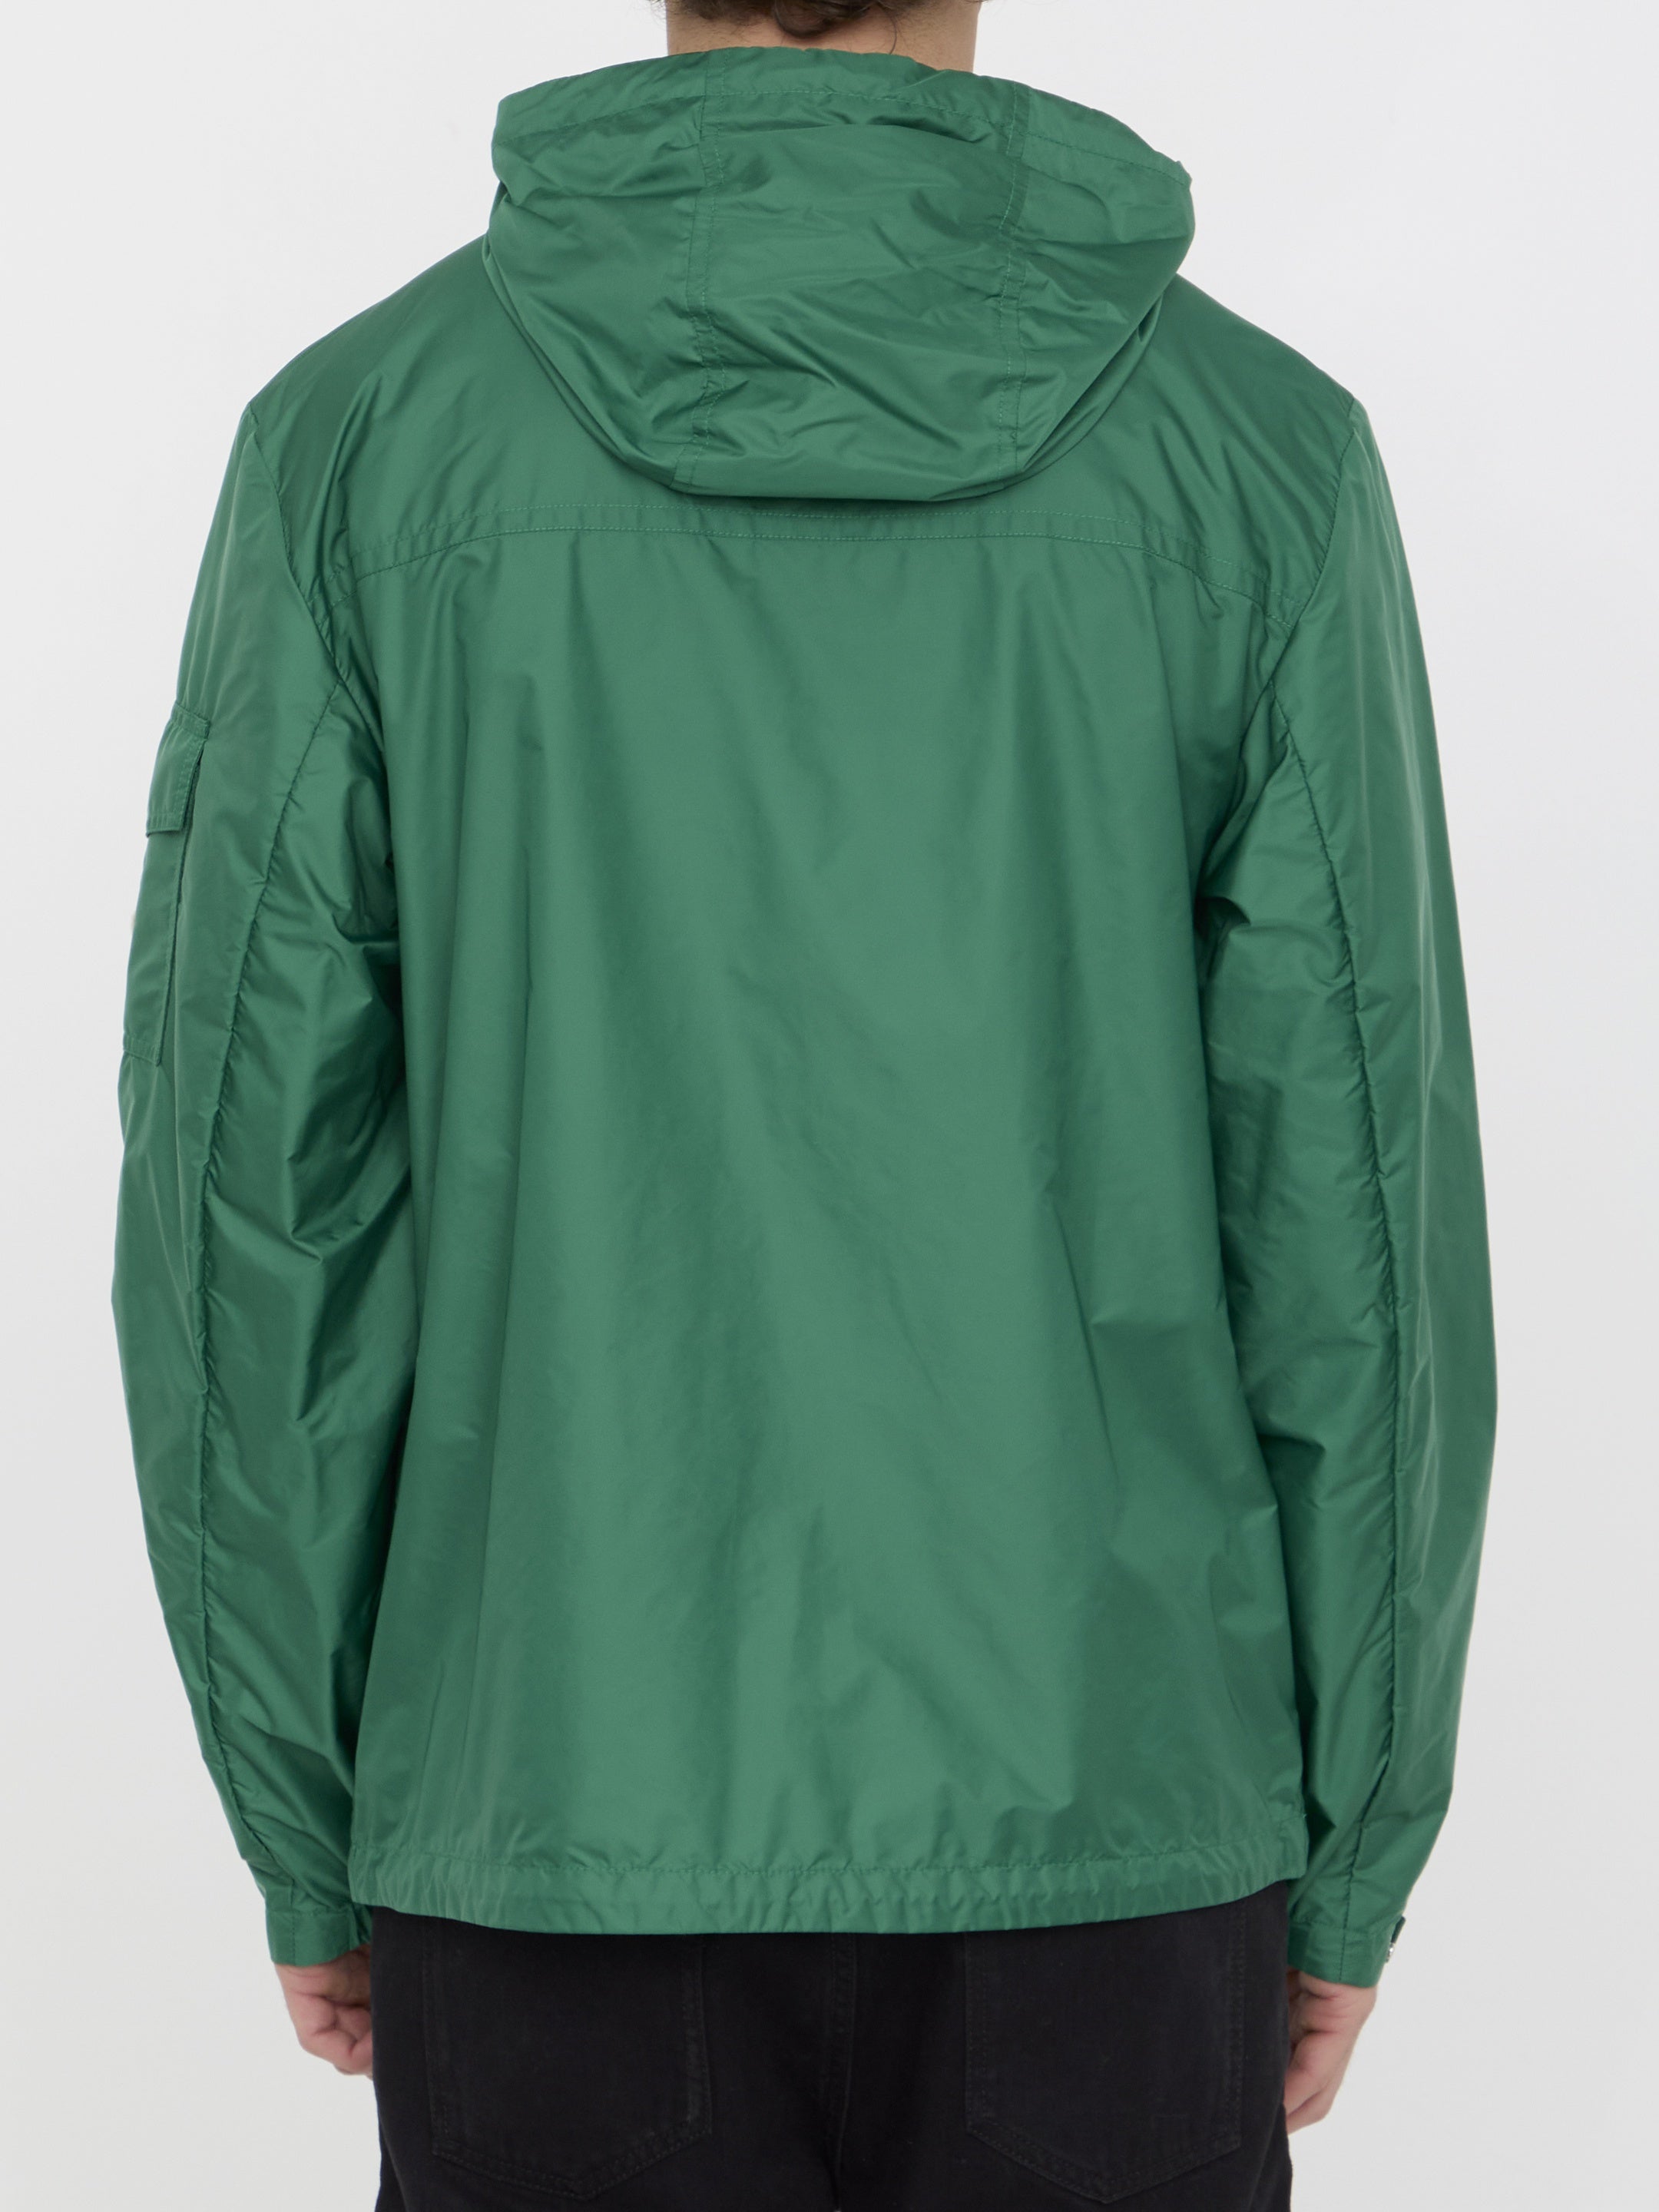 Etiache rain jacket